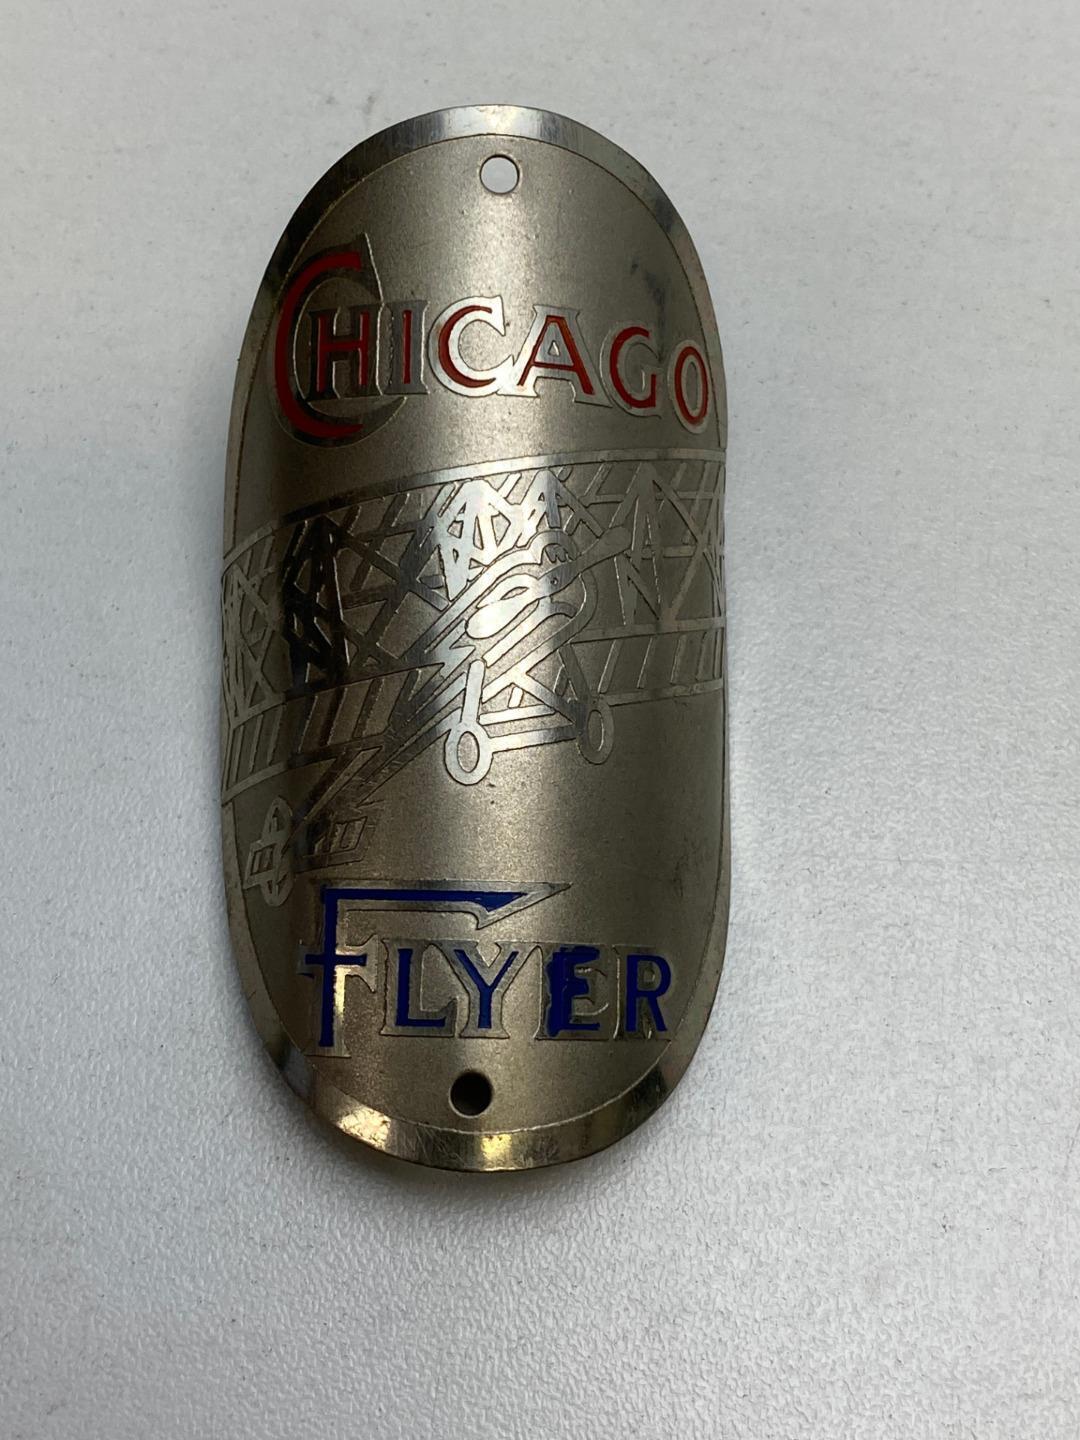 NOS vintage CHICAGO FLYER bicycle HEAD BADGE tag emblem Bi-Plane